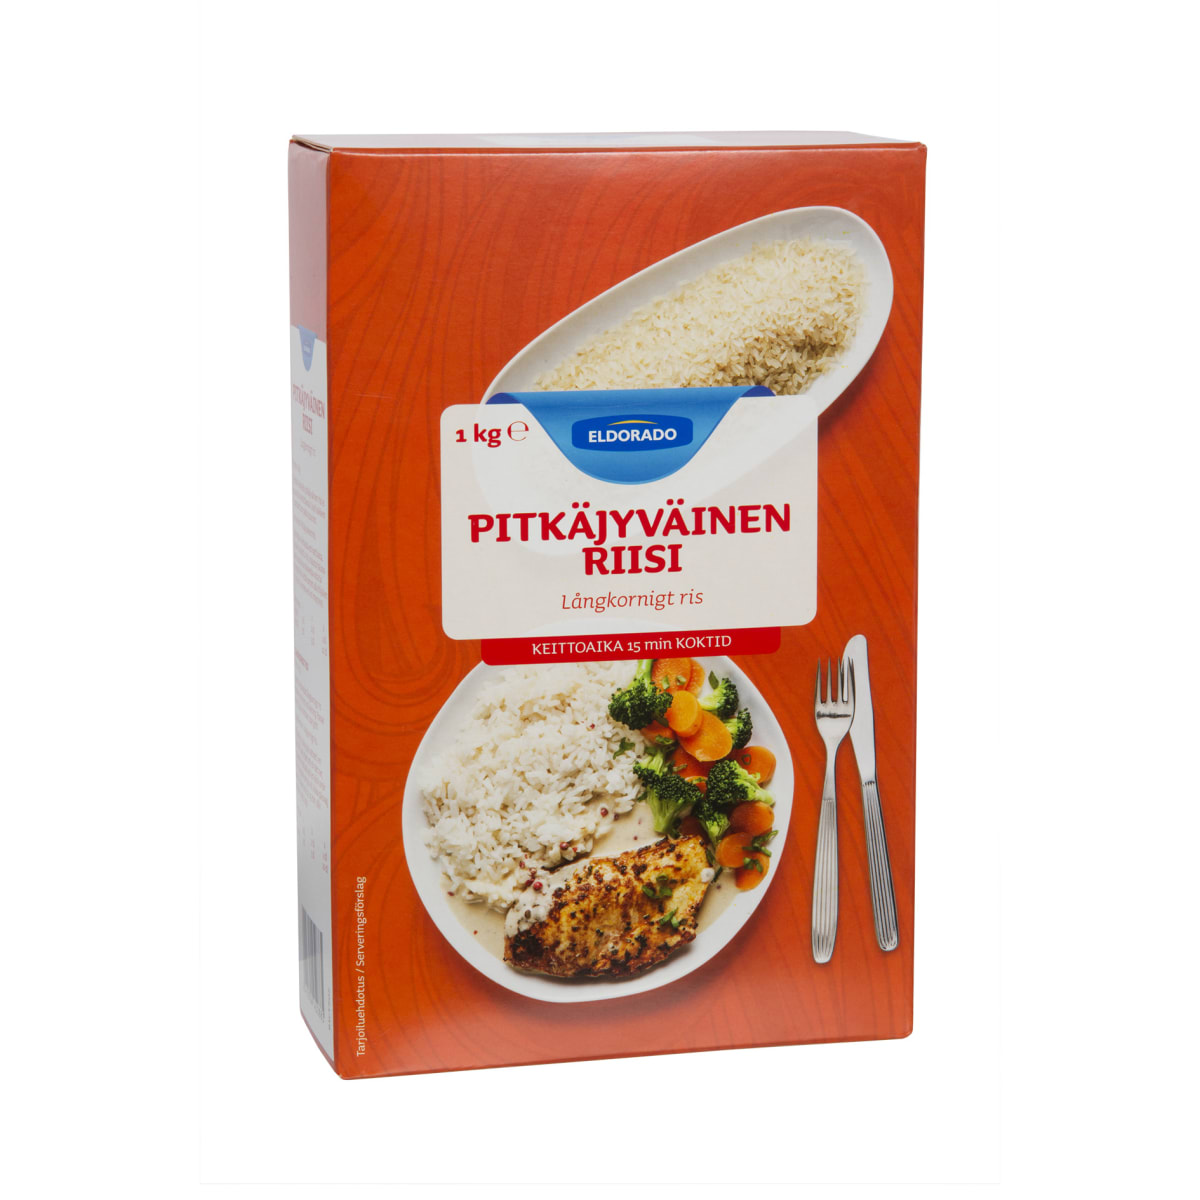 Eldorado Pitkäjyväinen riisi 1kg  verkkokauppa